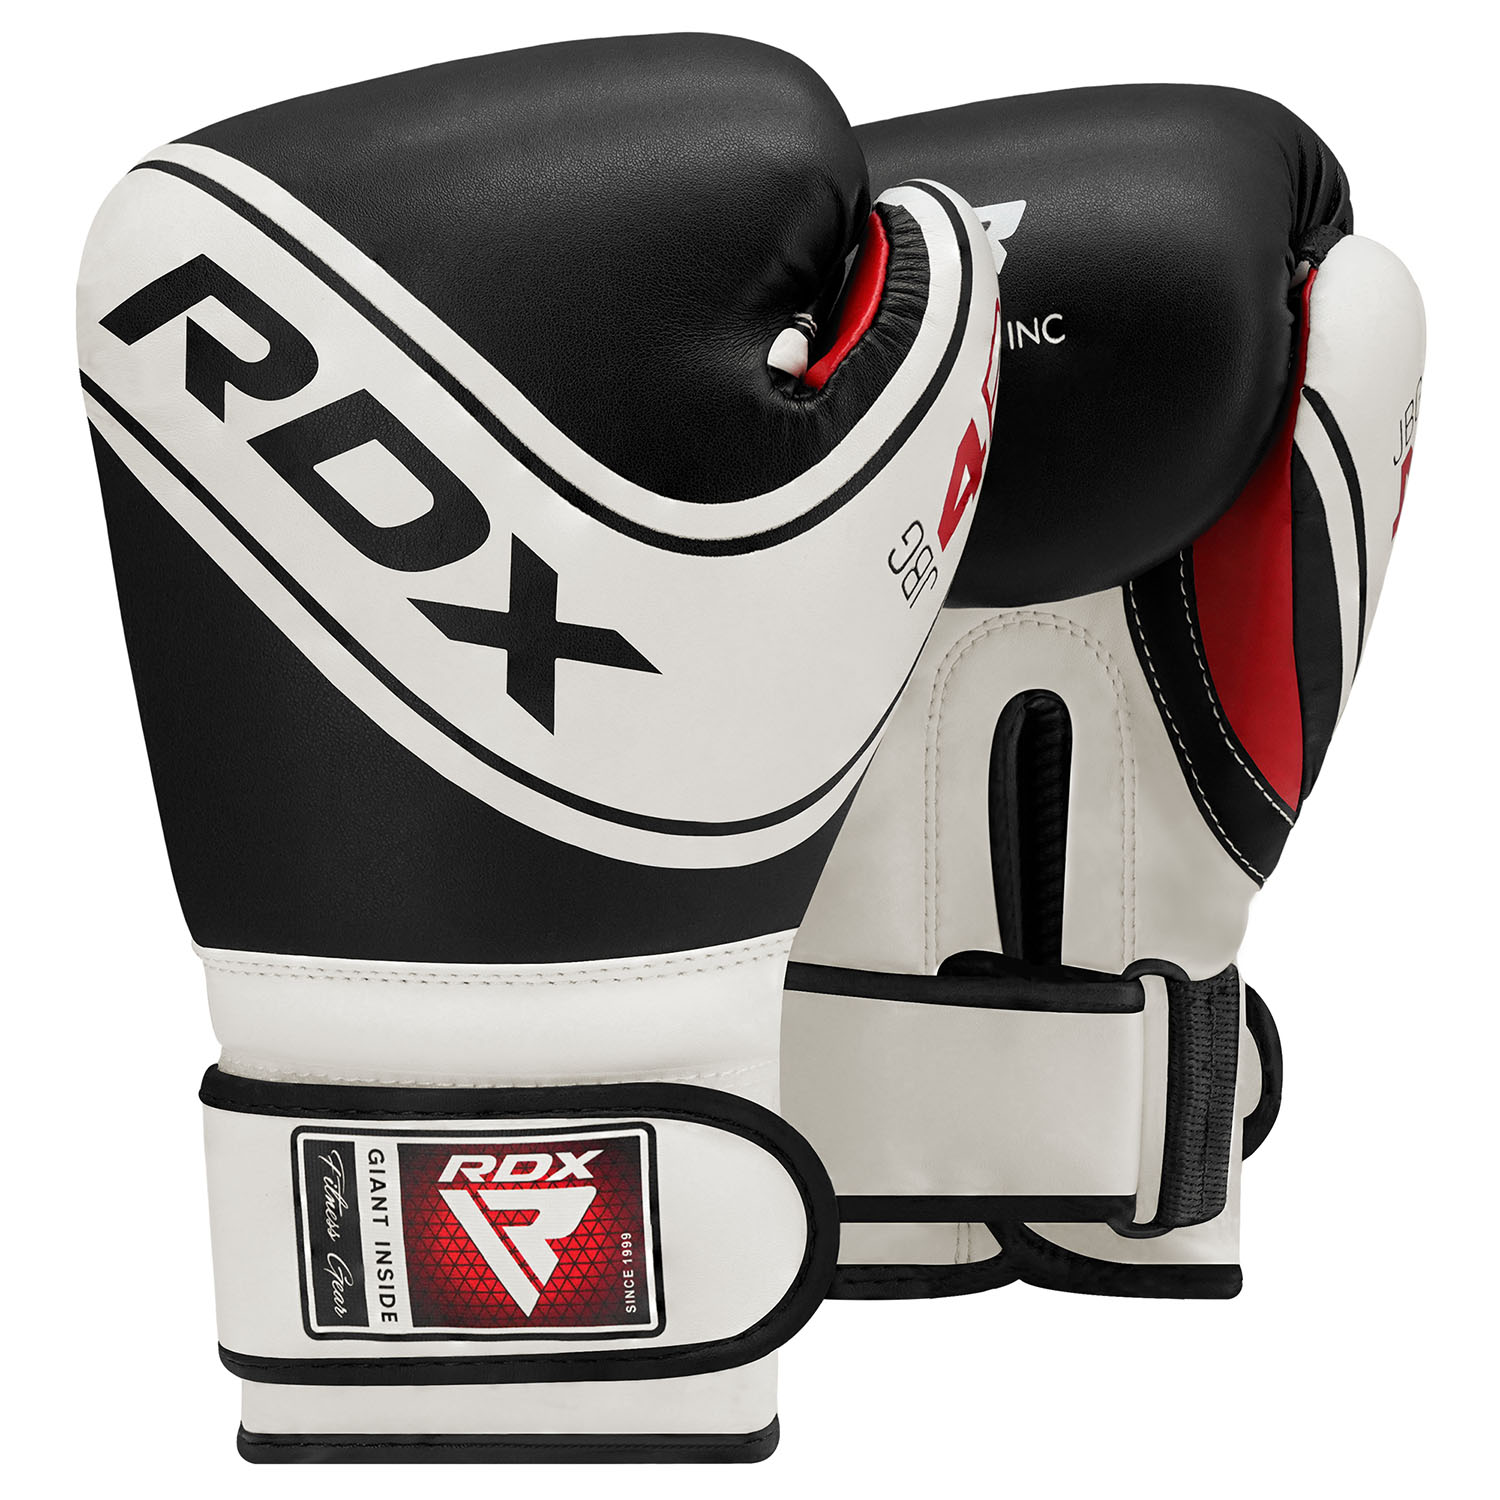 RDX Boxing Gloves, Kinder, 4B, black-white